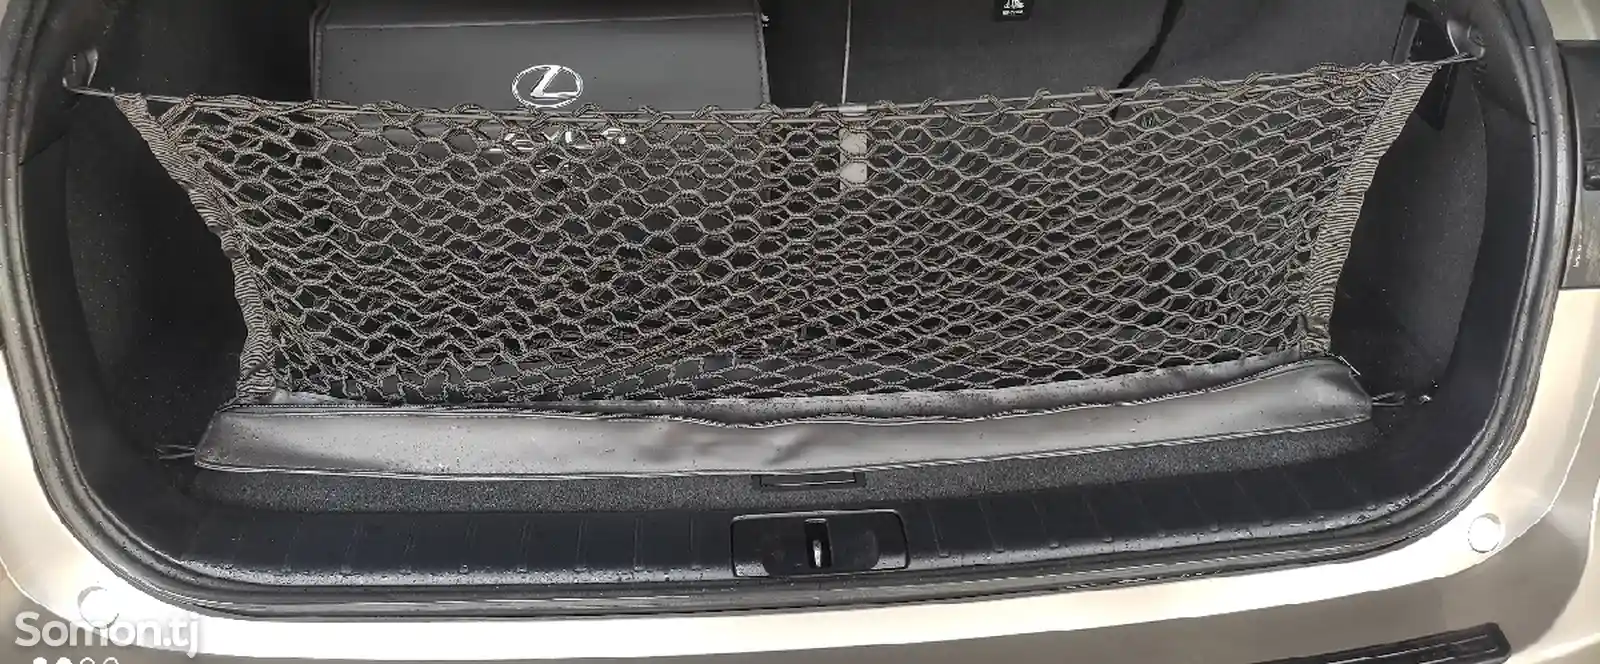 Сетка в багажник кроссовера Lexus-2